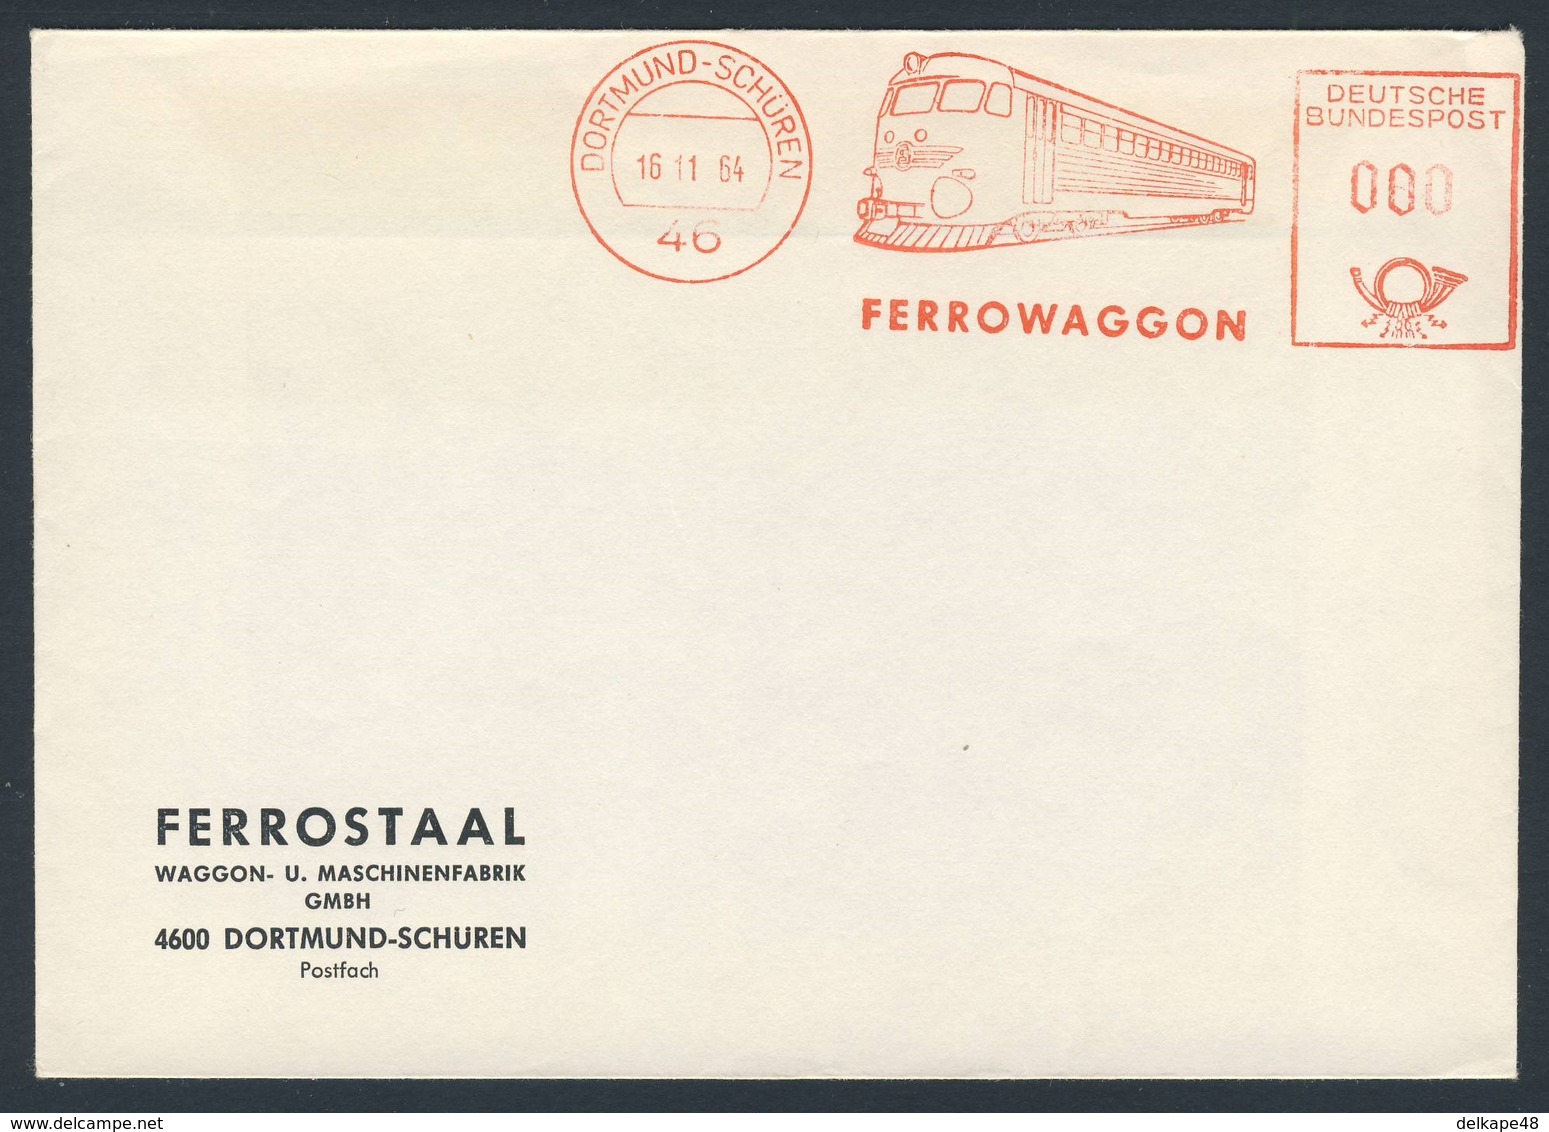 Deutschland Germany 1964 Cover / Brief / Enveloppe - "Ferrowaggon"  Dortmund-Schüren - Ferrostaal, Waggon-Maschinenfabr. - Treinen